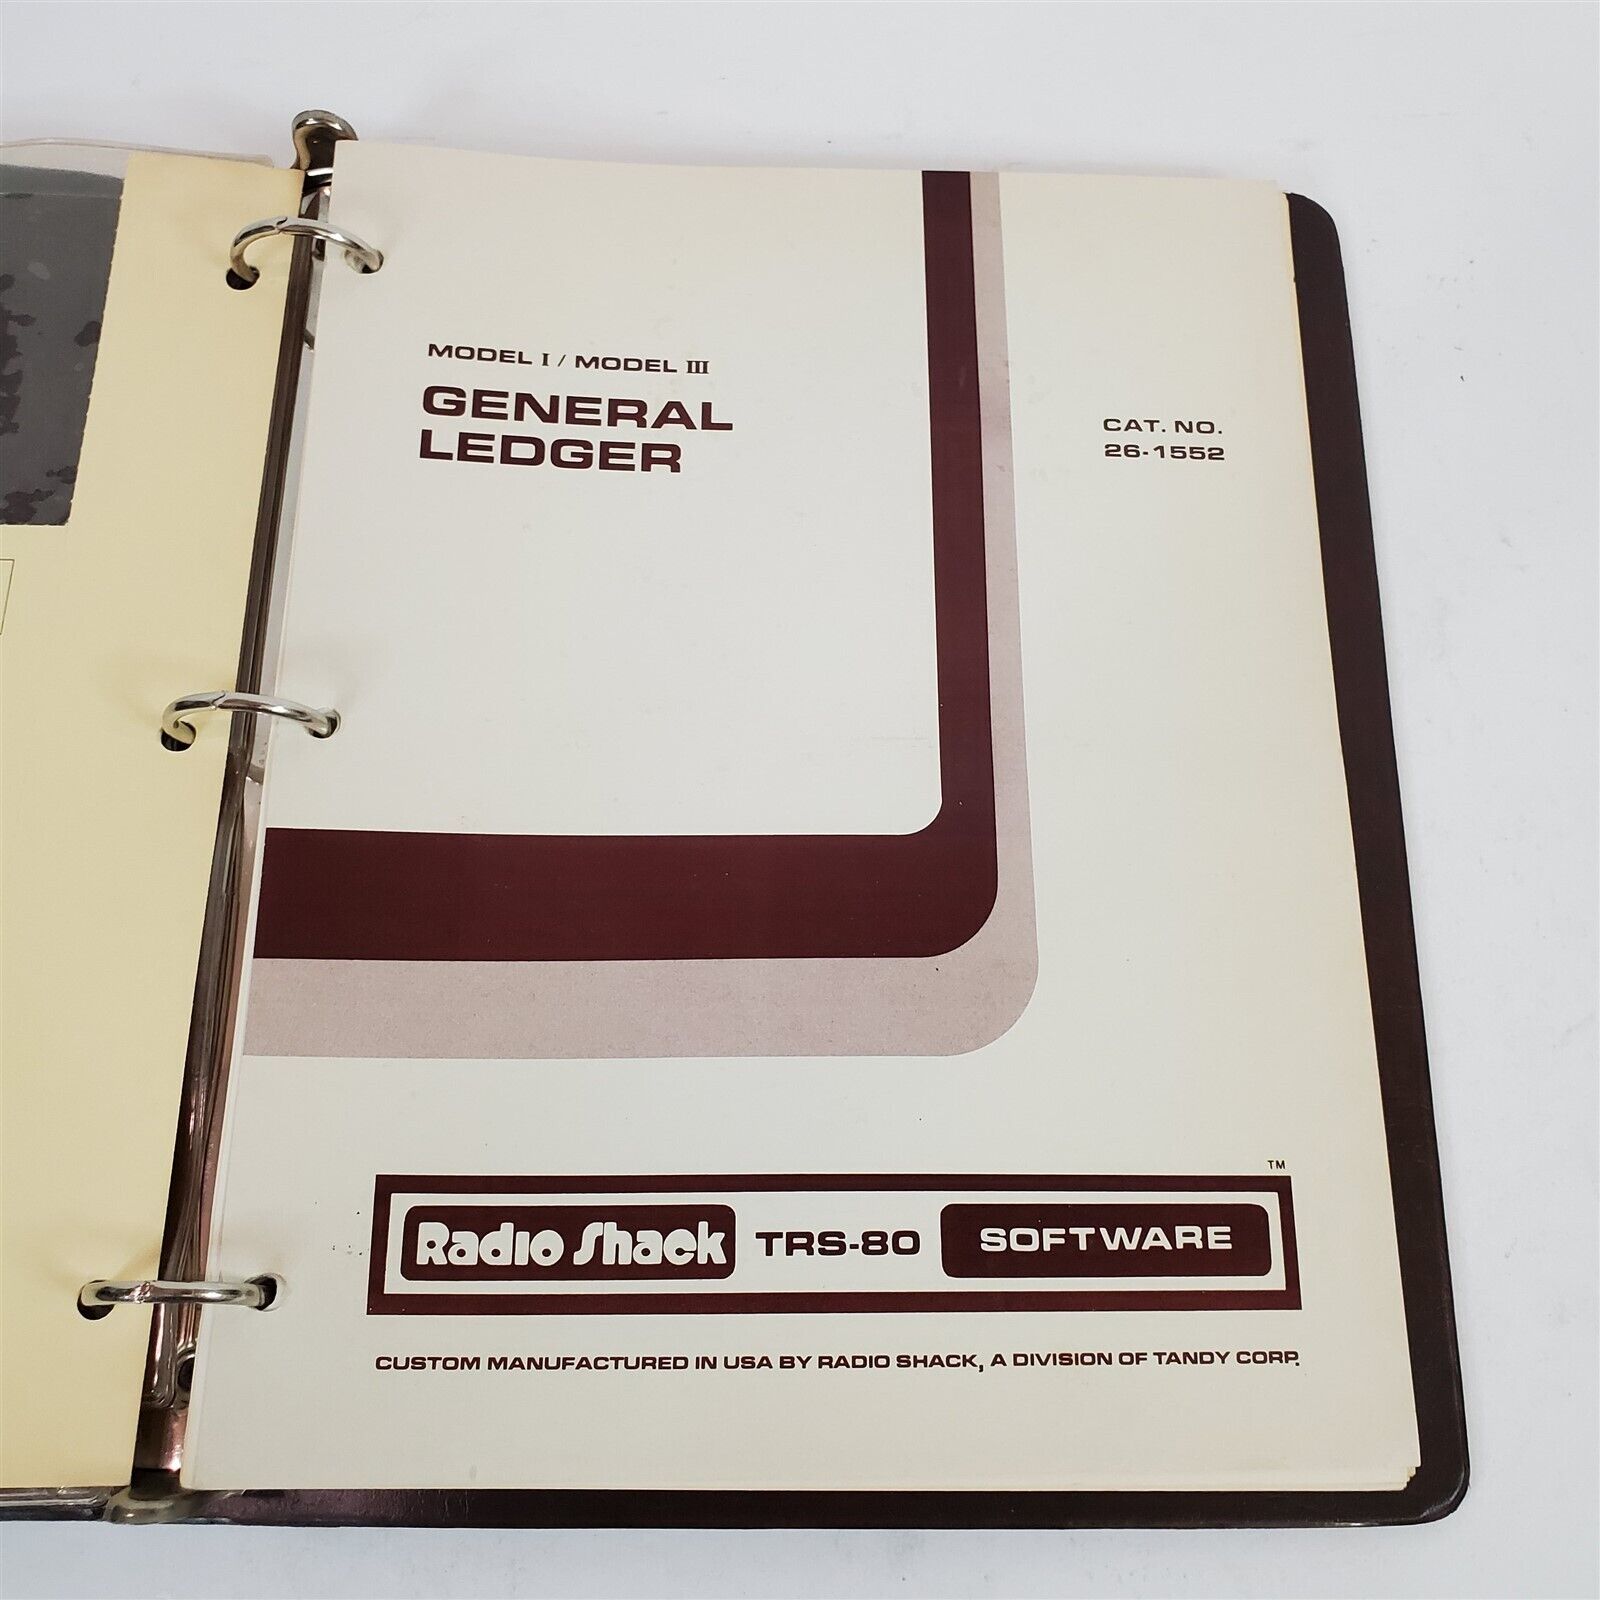 VTG 1981 Original TRS-80 Model I / III General Ledger Software & Manual 26-1552